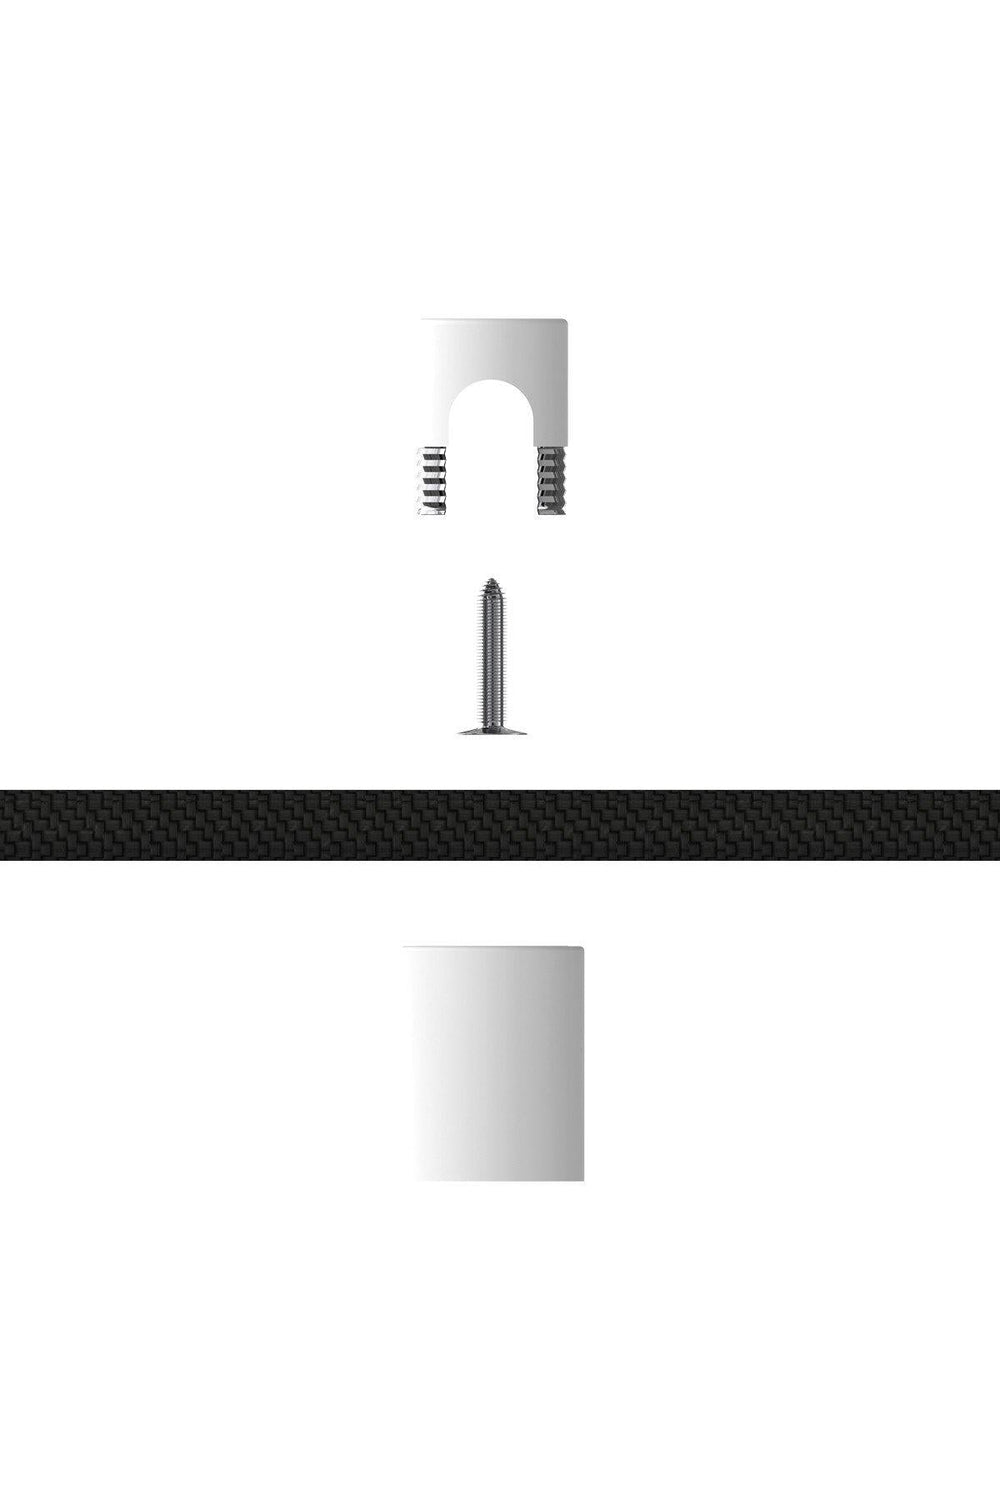 Calex 940092 | Cable Holders | White Aluminium | Individual